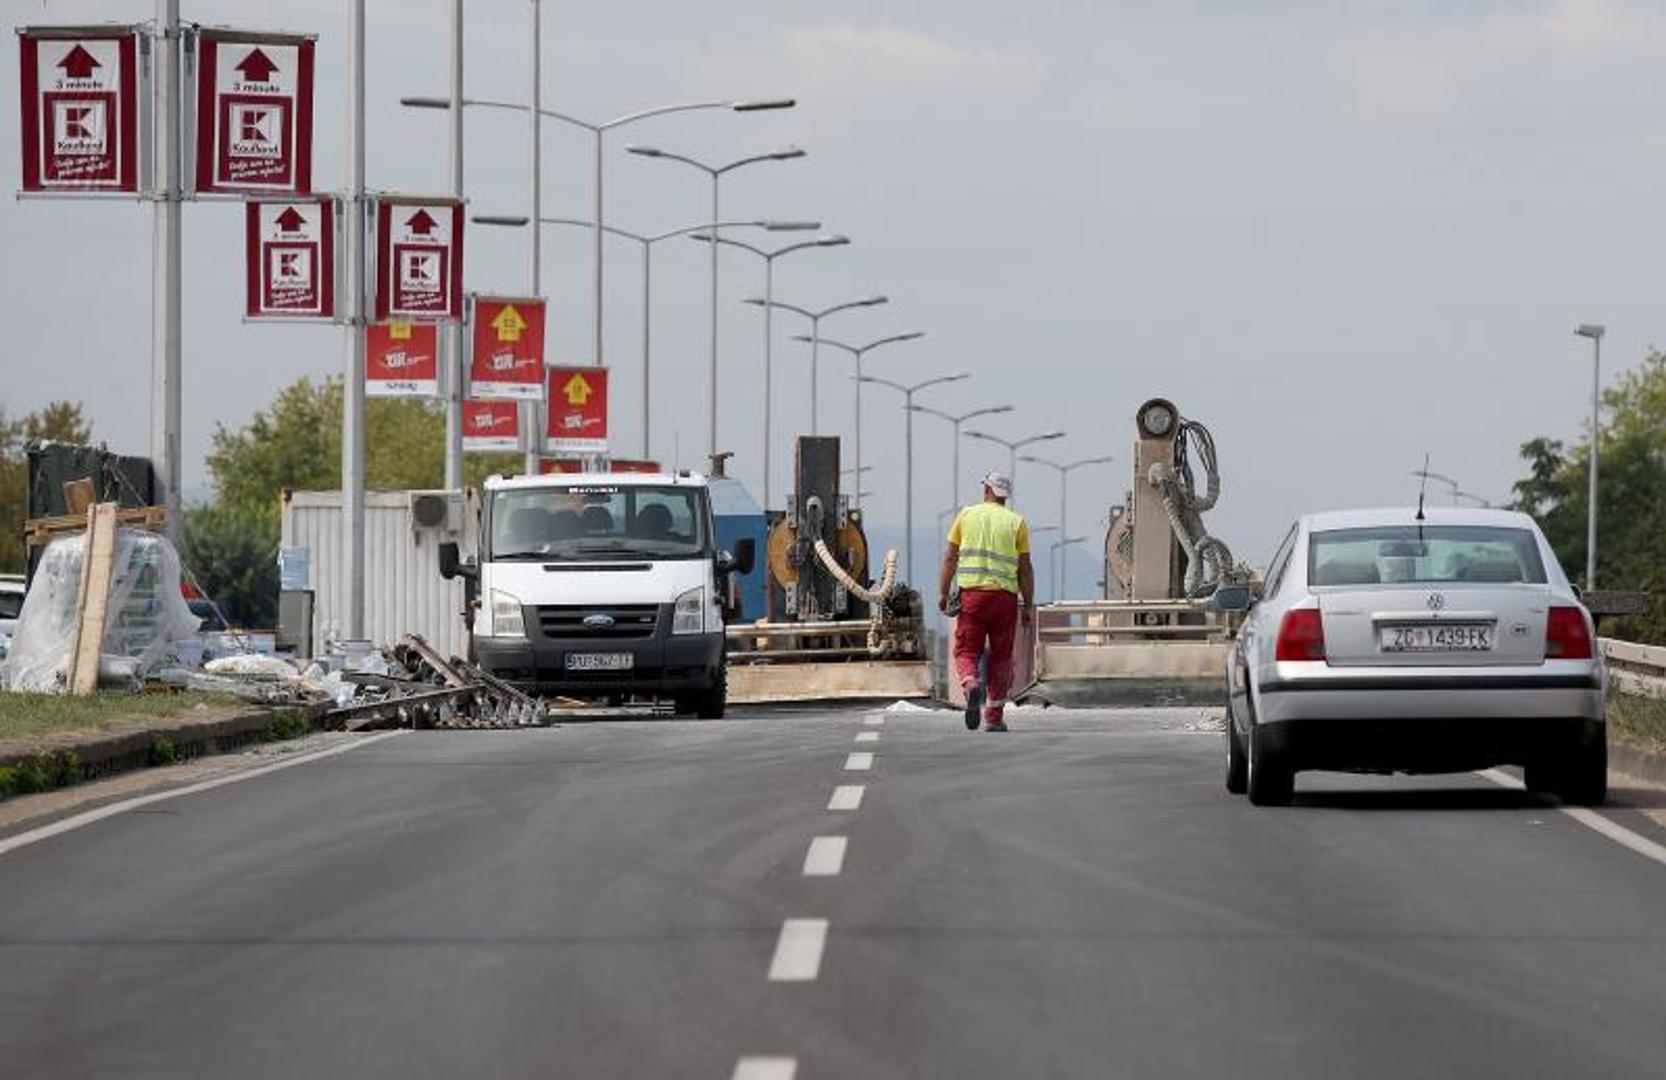 Radovi na glavnim zagrebačkim cestama uzrok su brojnih prometnih gužvi koje se povećavaju kako sezona godišnjih odmora završava...